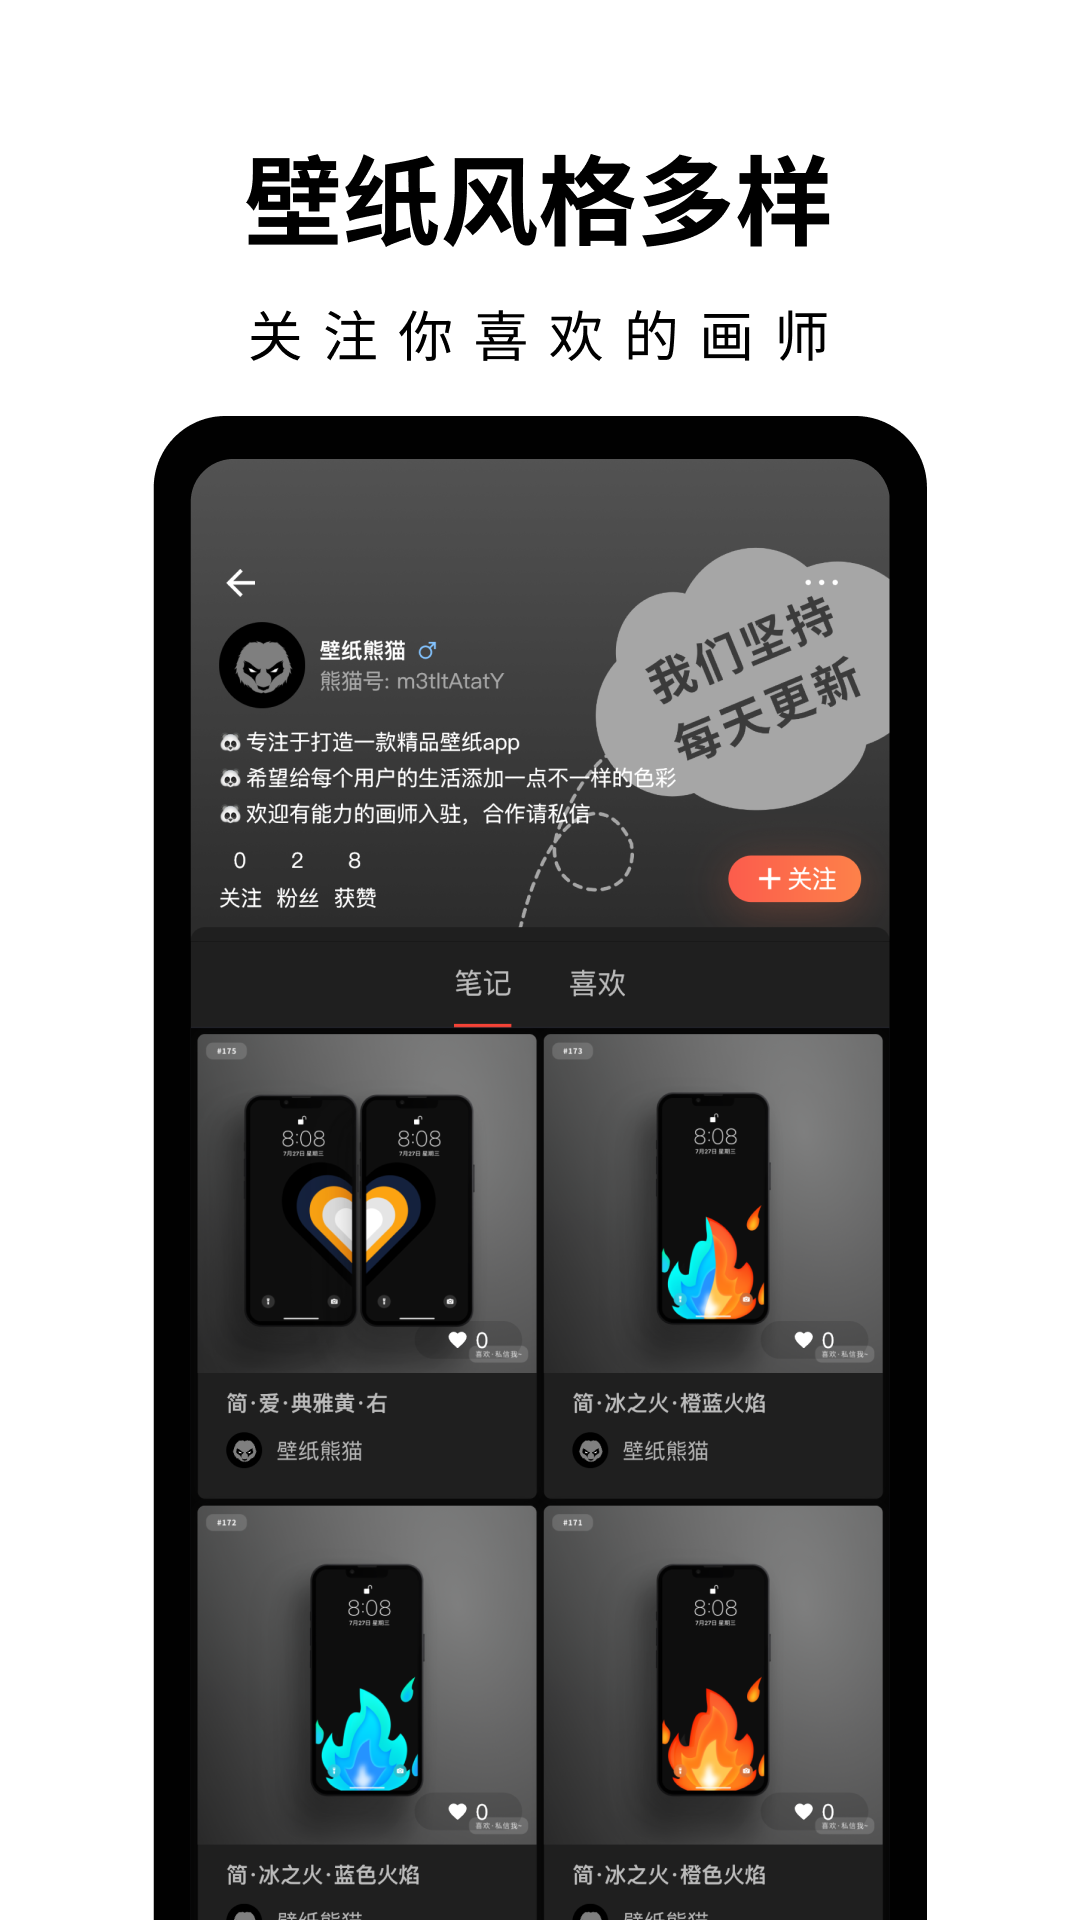 壁纸熊猫下载app软件图片1